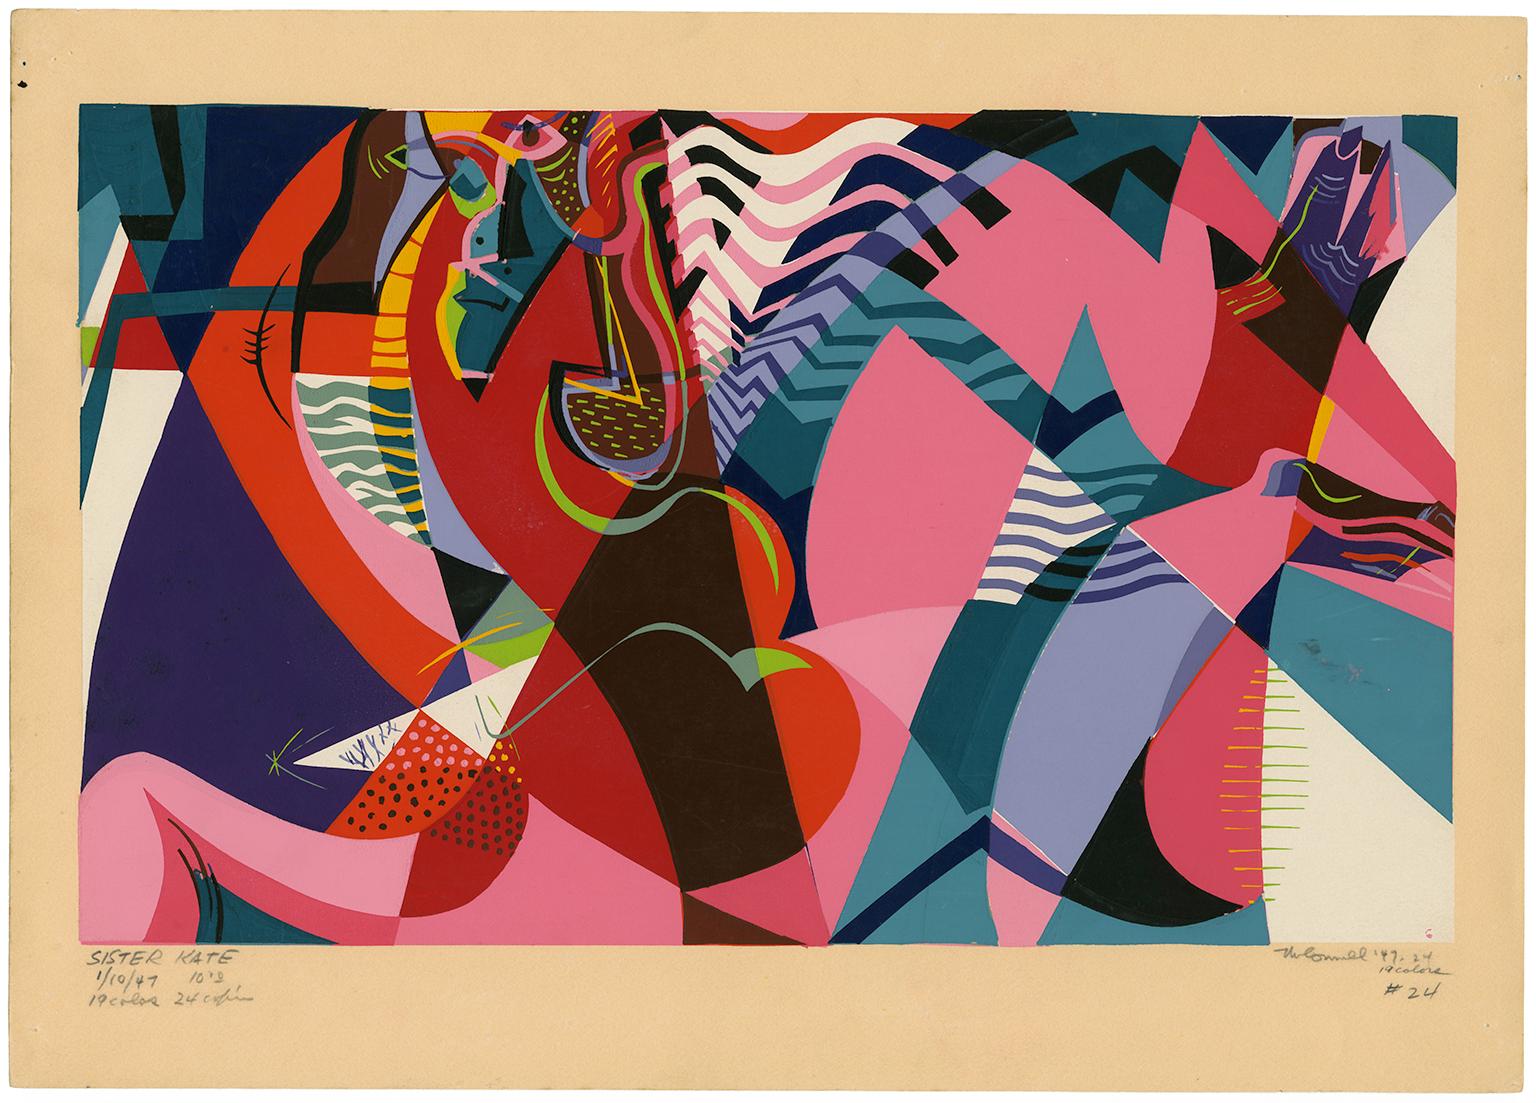 Mid-Century-Mid-Century, von Jazz inspirierter Modernismus, Schwester Kate – Print von James Houston McConnell